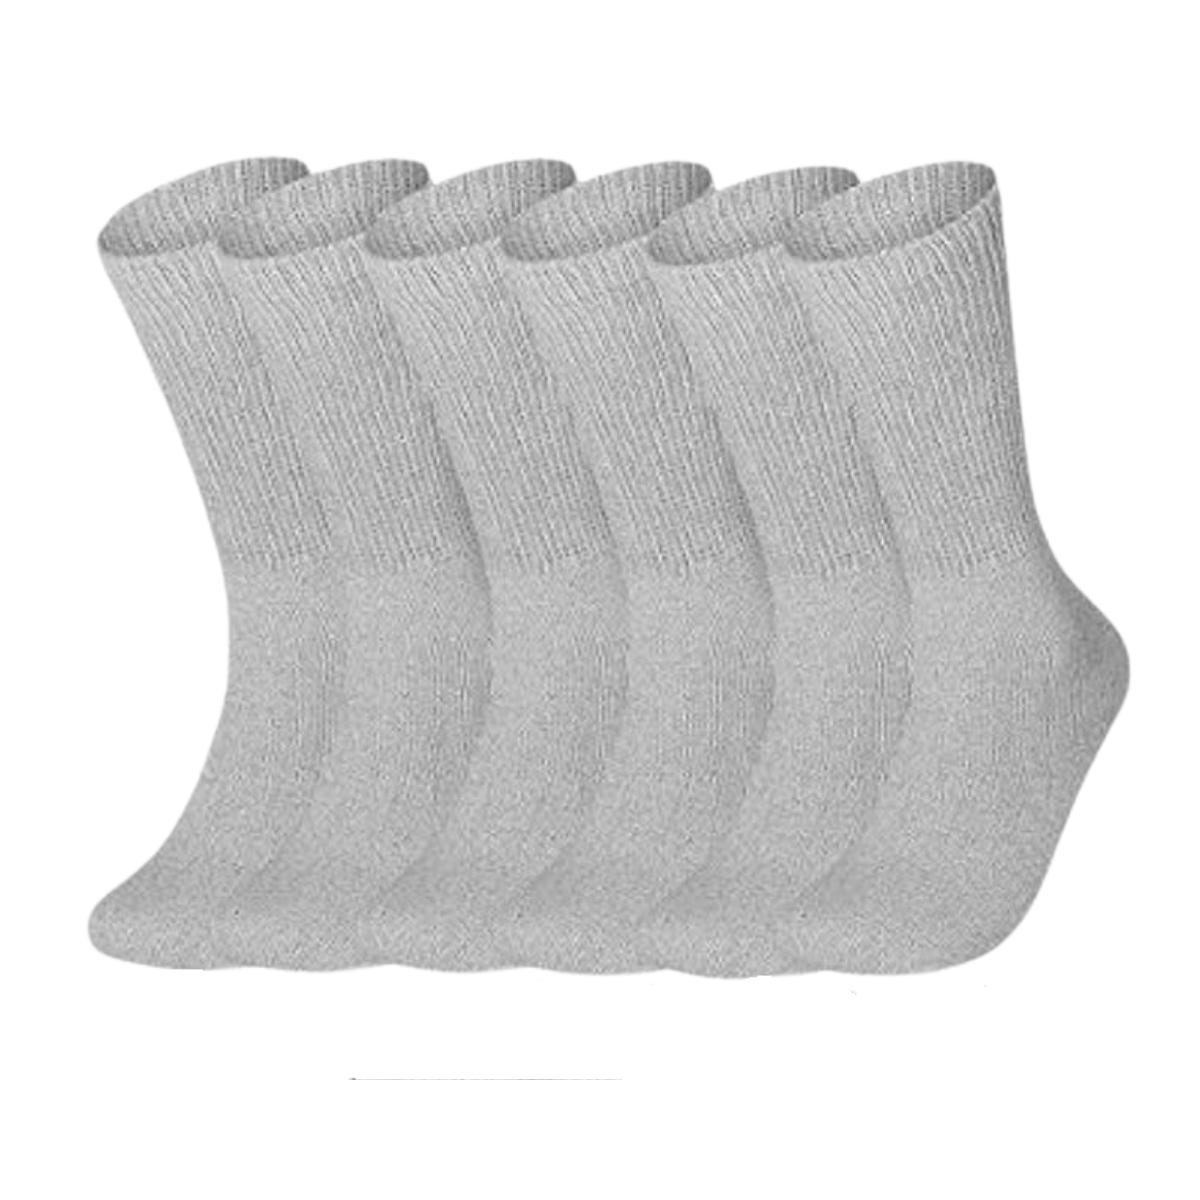 calcetines de algodon diabetico (6 pares)